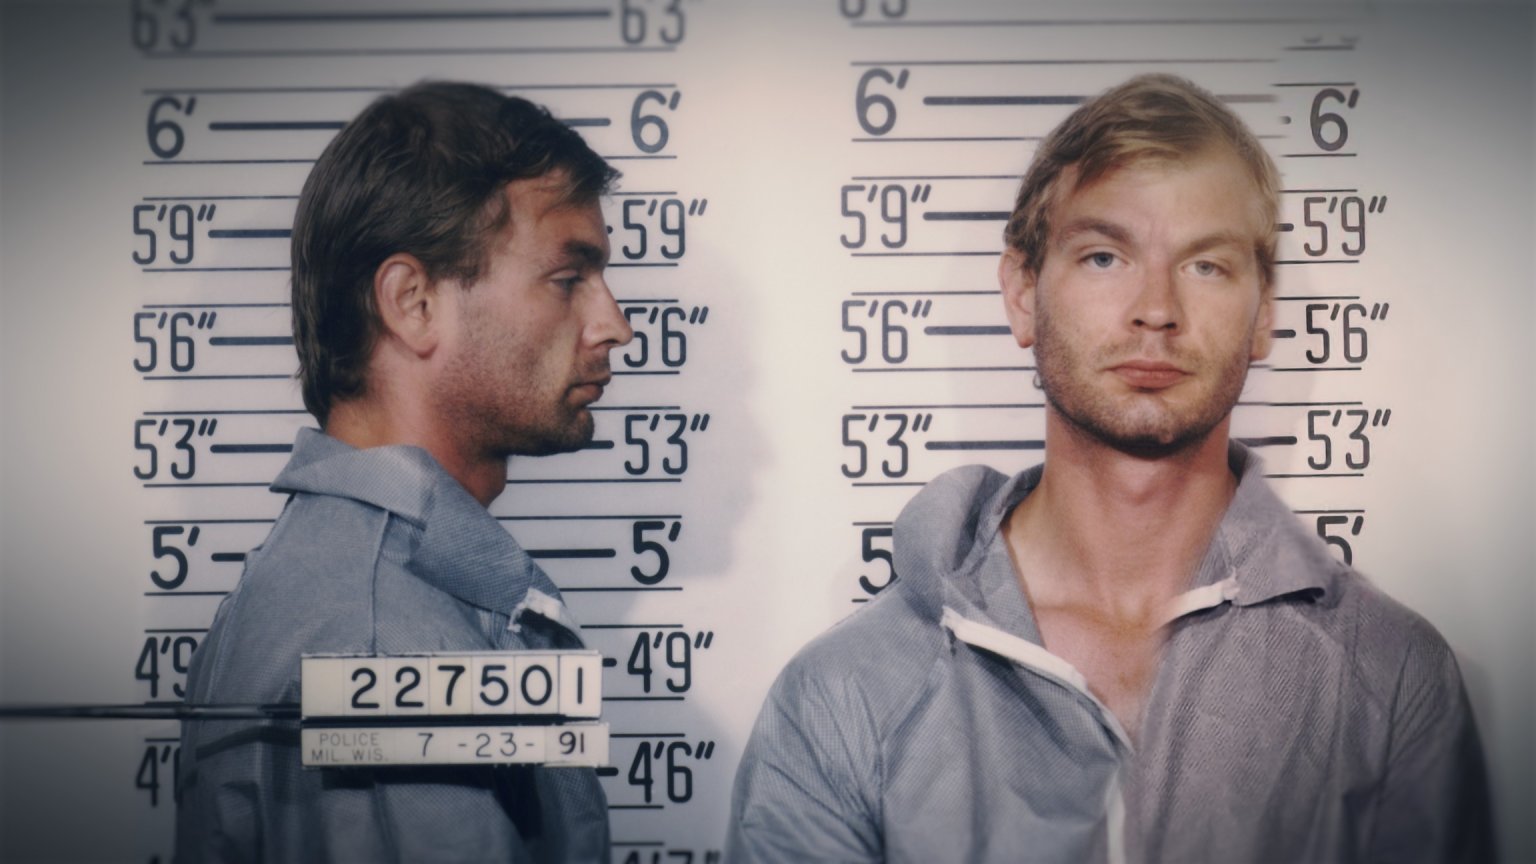 Na 'Dahmer' komt Netflix met nieuwe docuserie over Jeffrey Dahmer, eerste trailer nu te zien